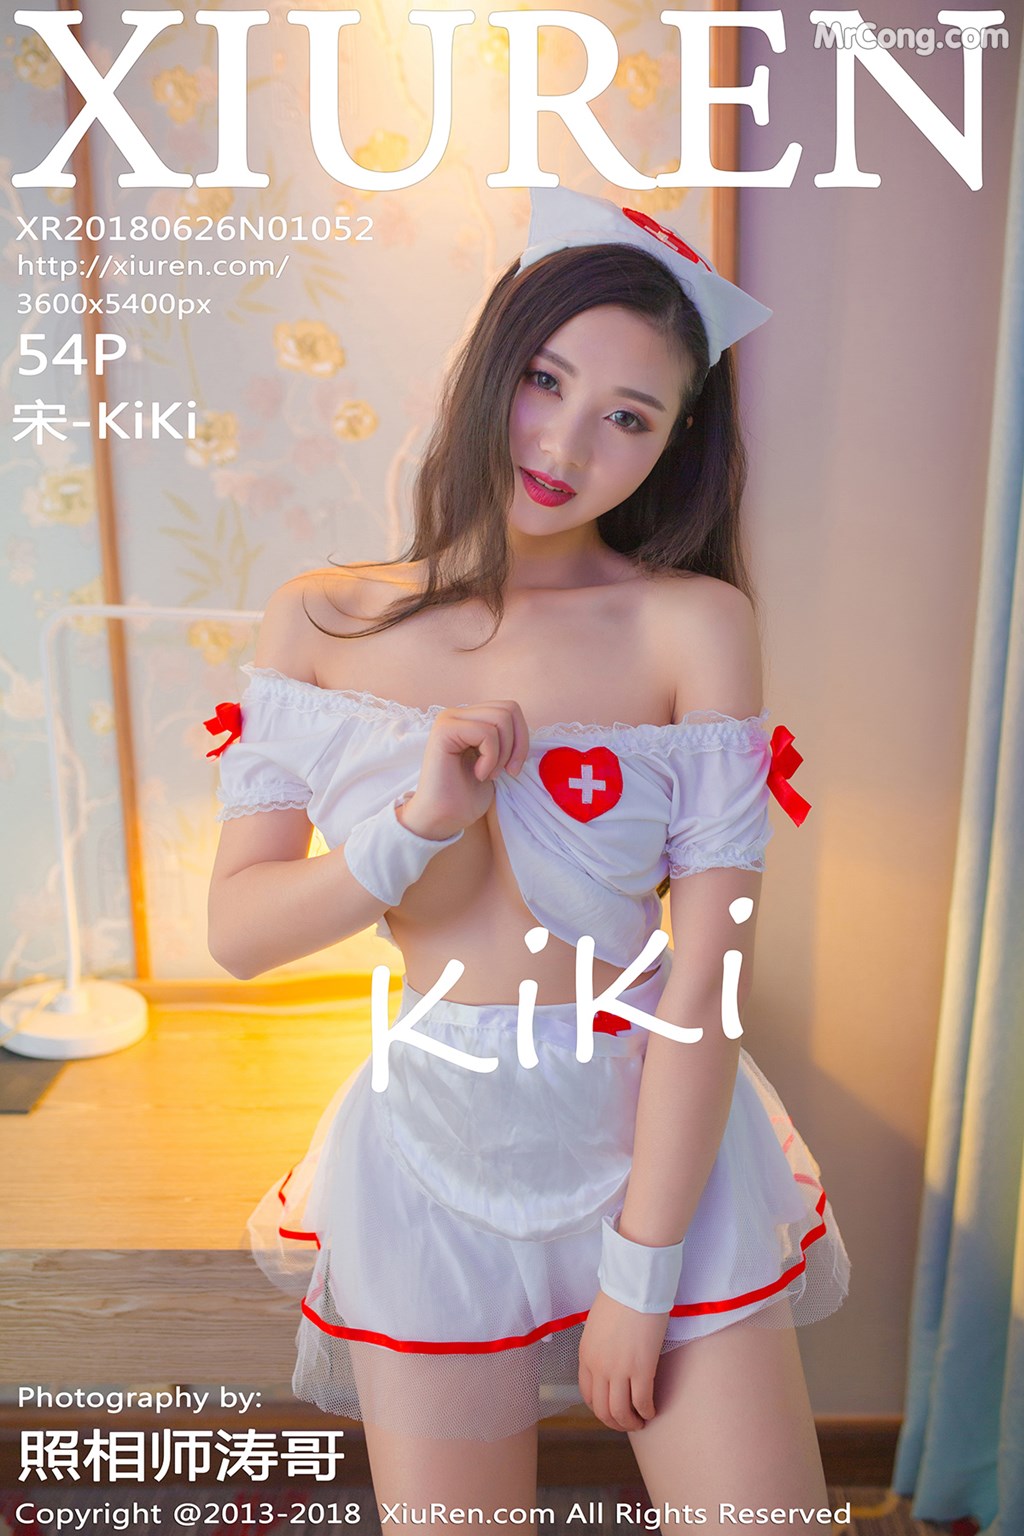 XIUREN No. 1052: Model 宋 -KiKi (55 photos) photo 1-0